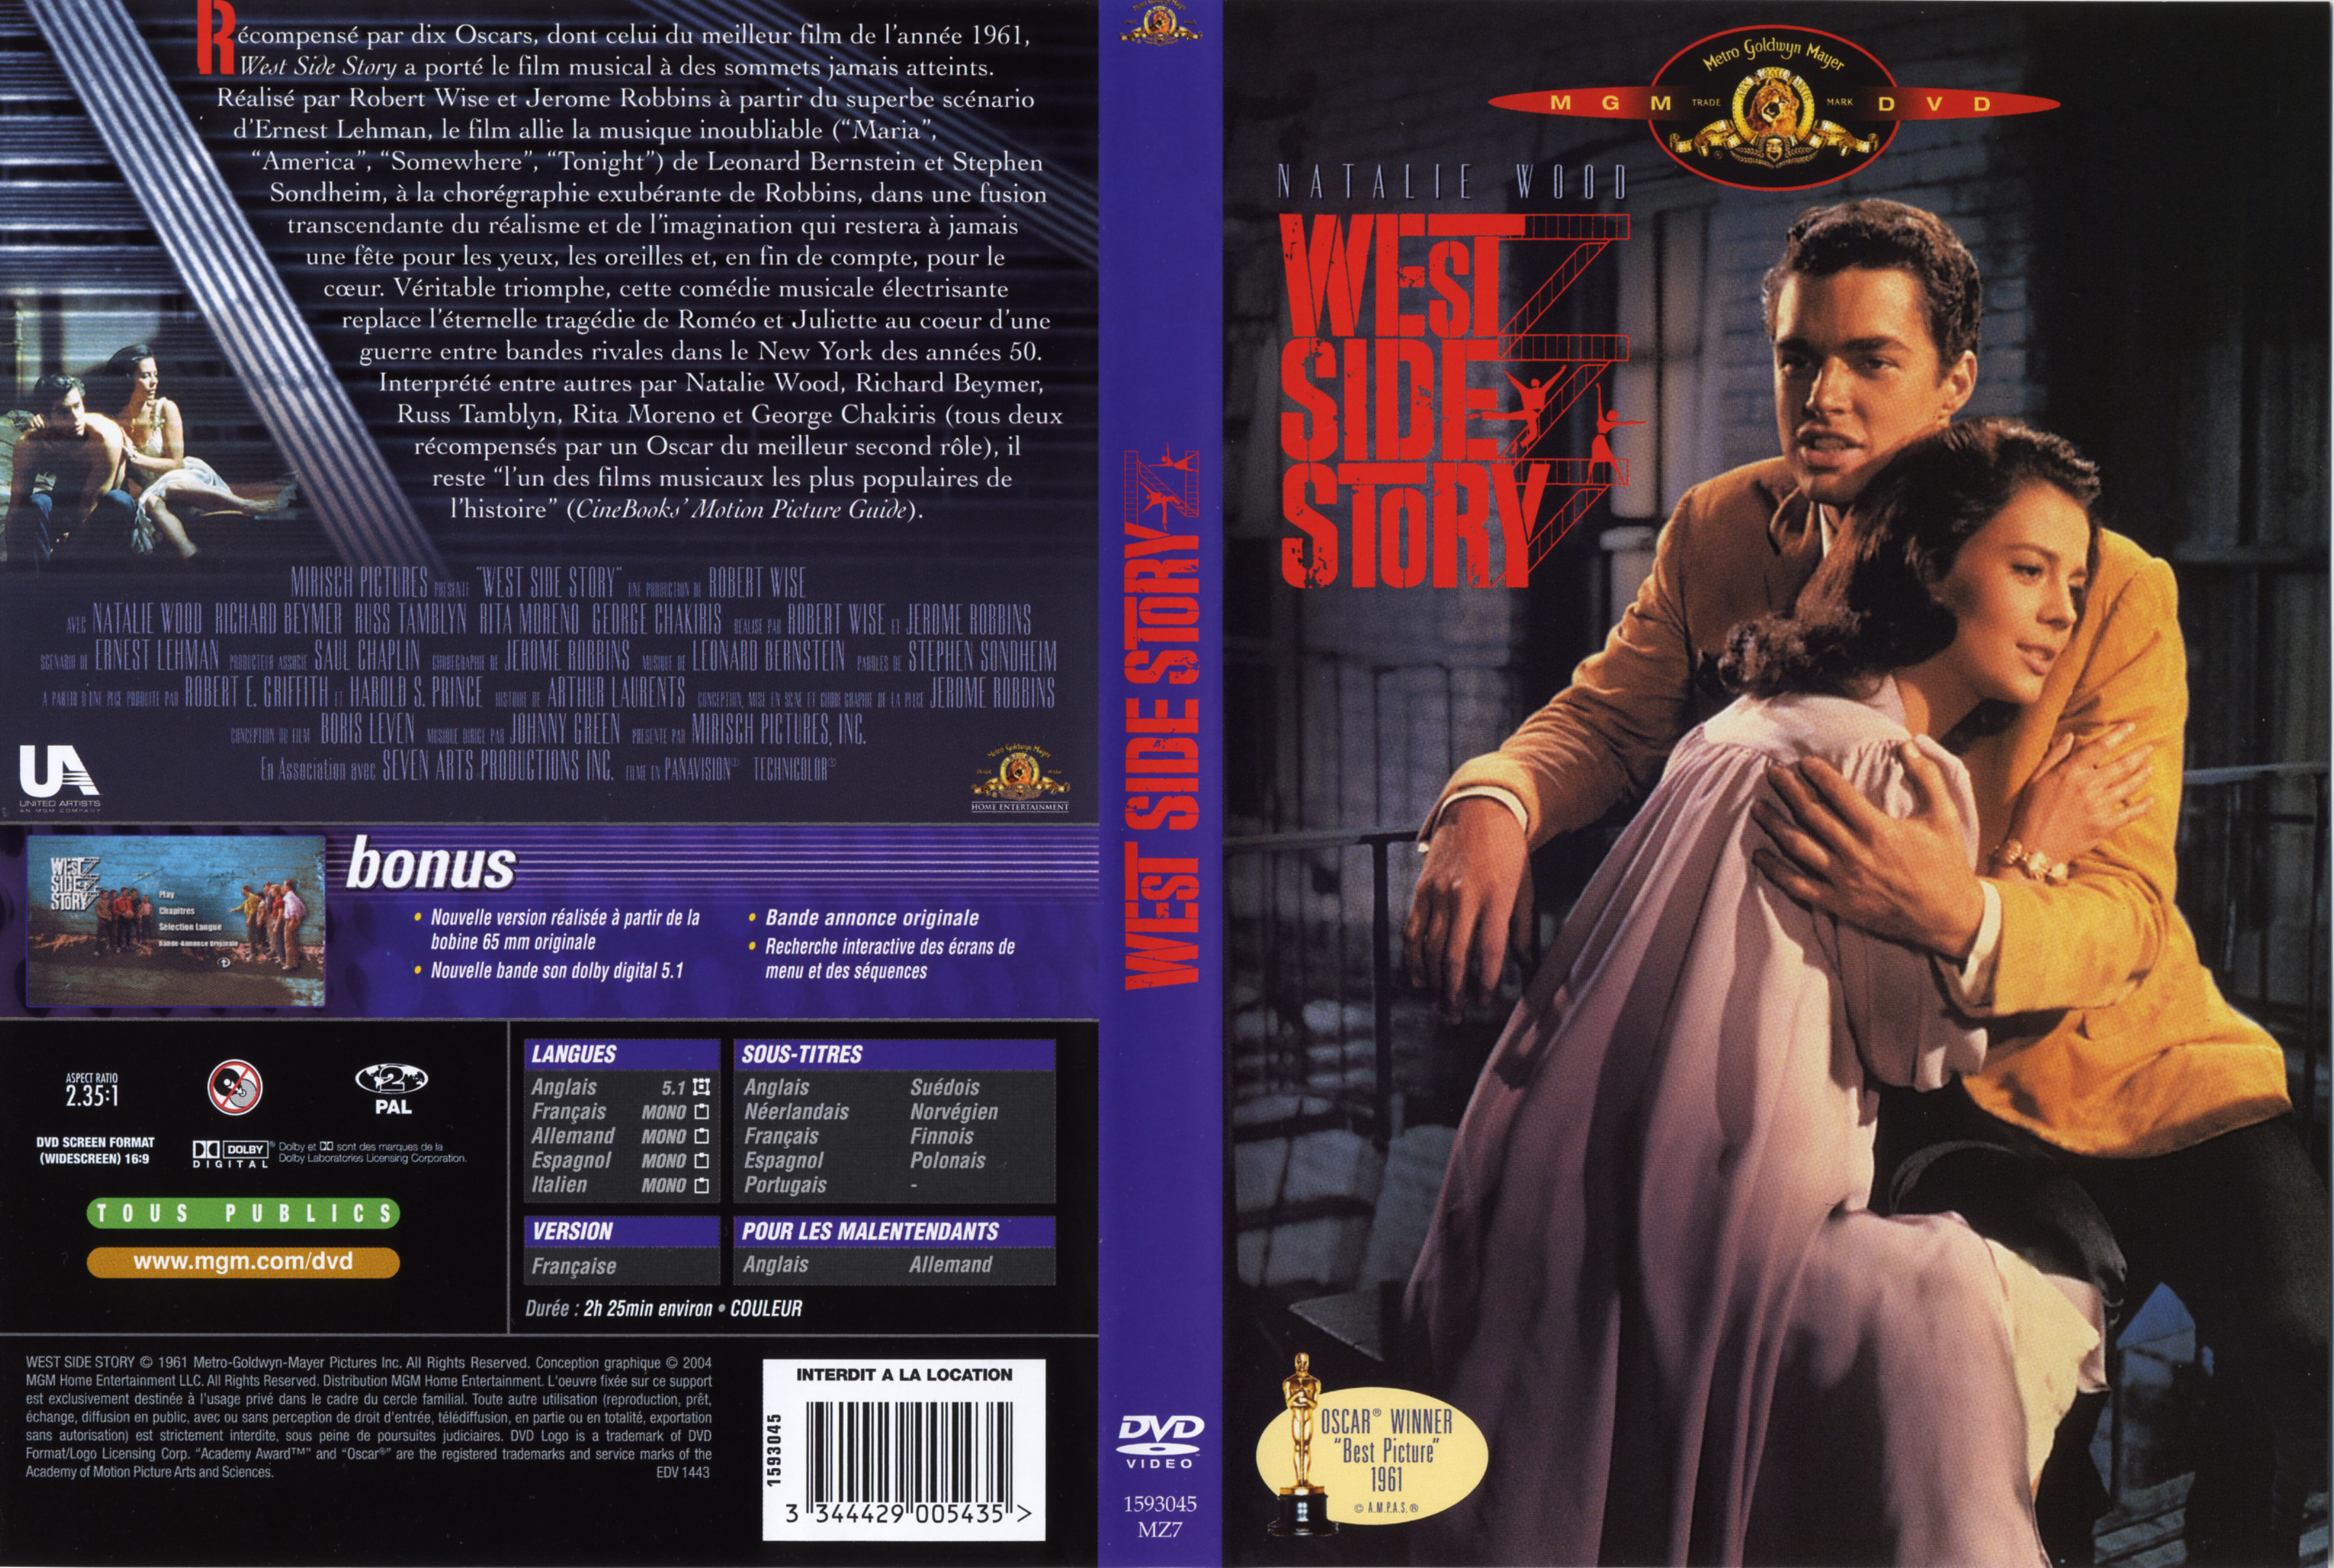 Jaquette DVD West side story v2